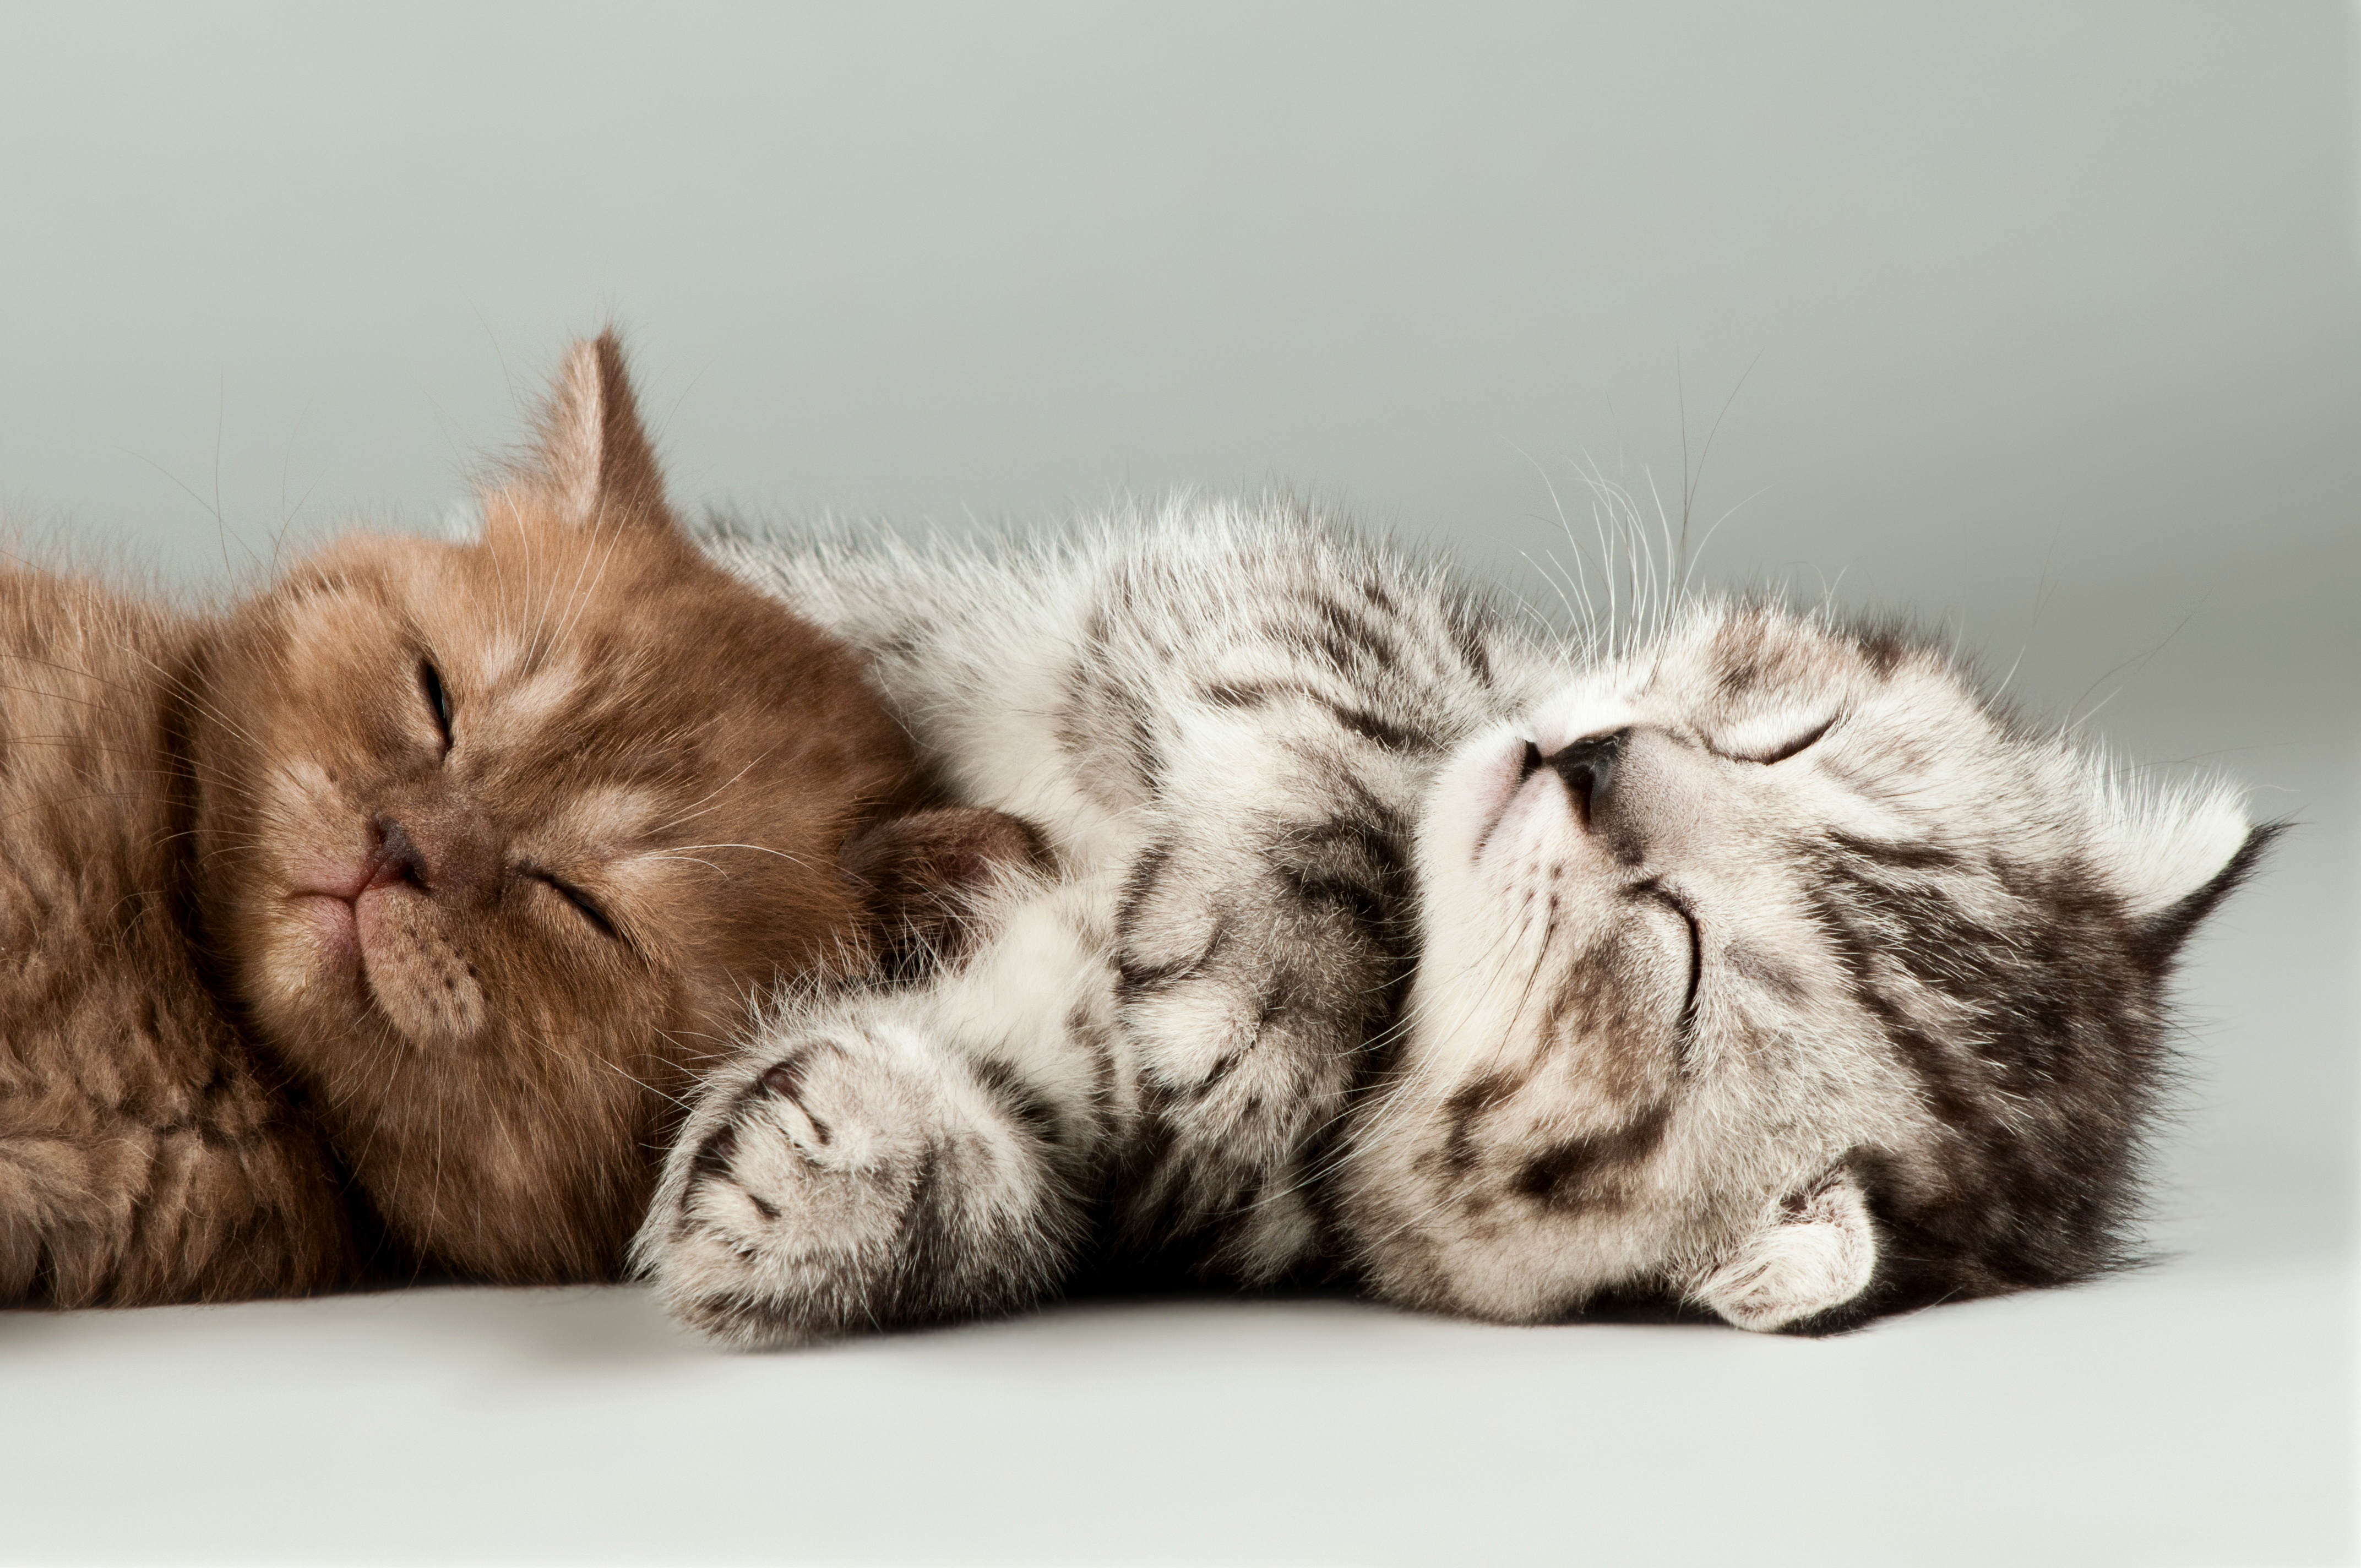 Скачать обои бесплатно Животные, Кошка, Кошки, Спать картинка на рабочий стол ПК